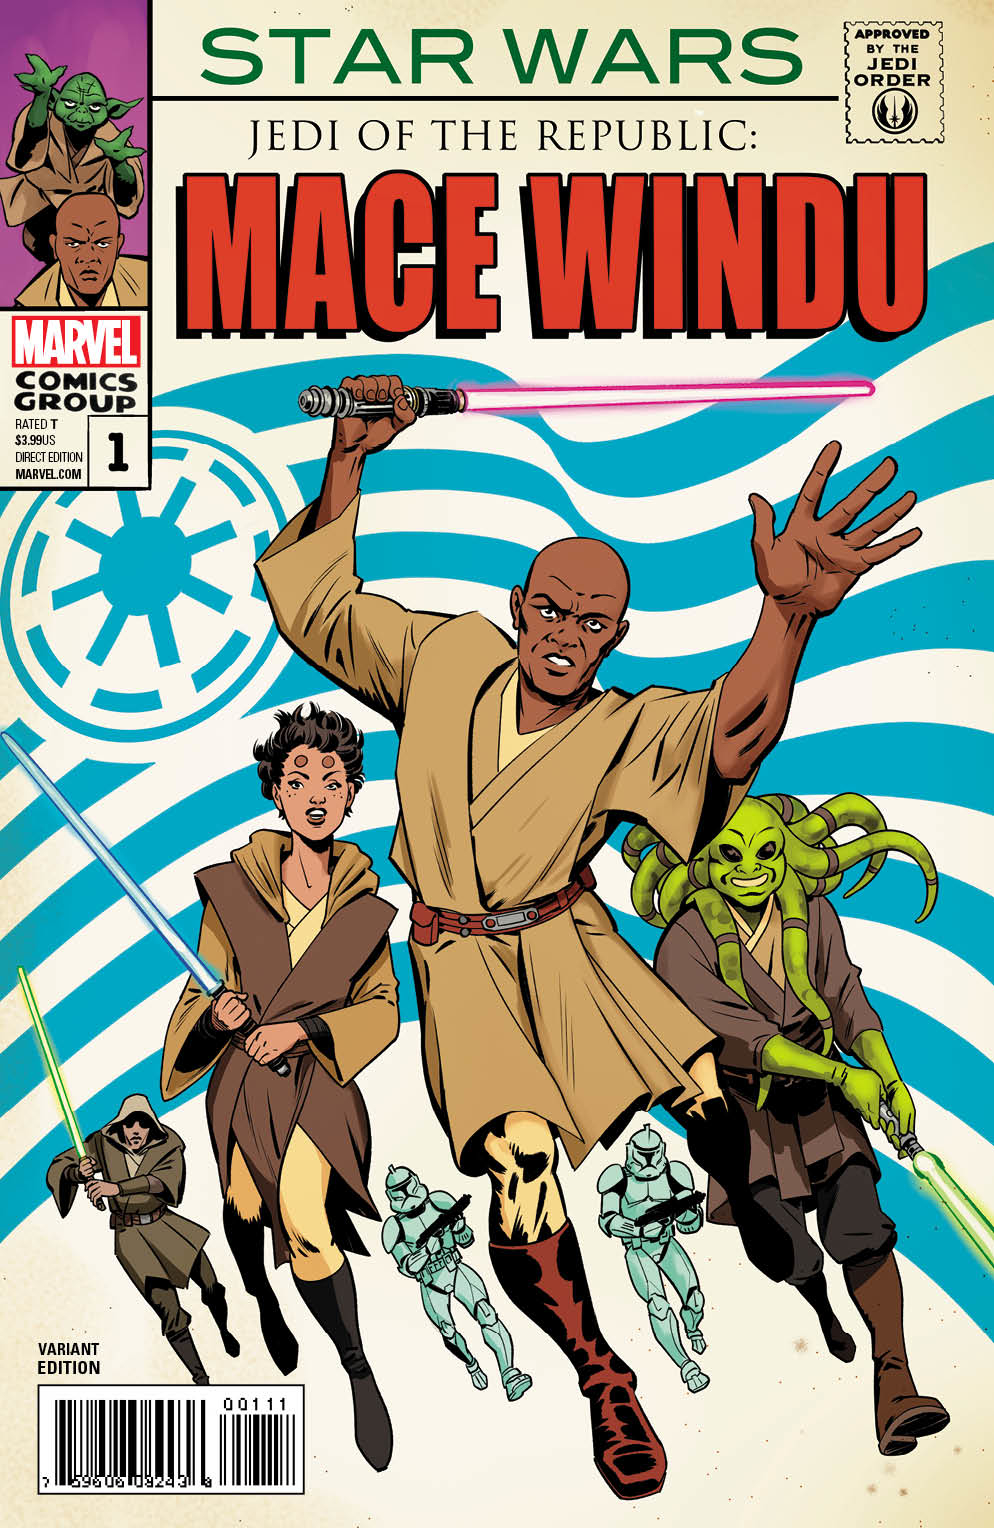 5 Star Wars comic SET #1 2 3 4 5 Marvel 1st MACE WINDU Jedi of the Republic